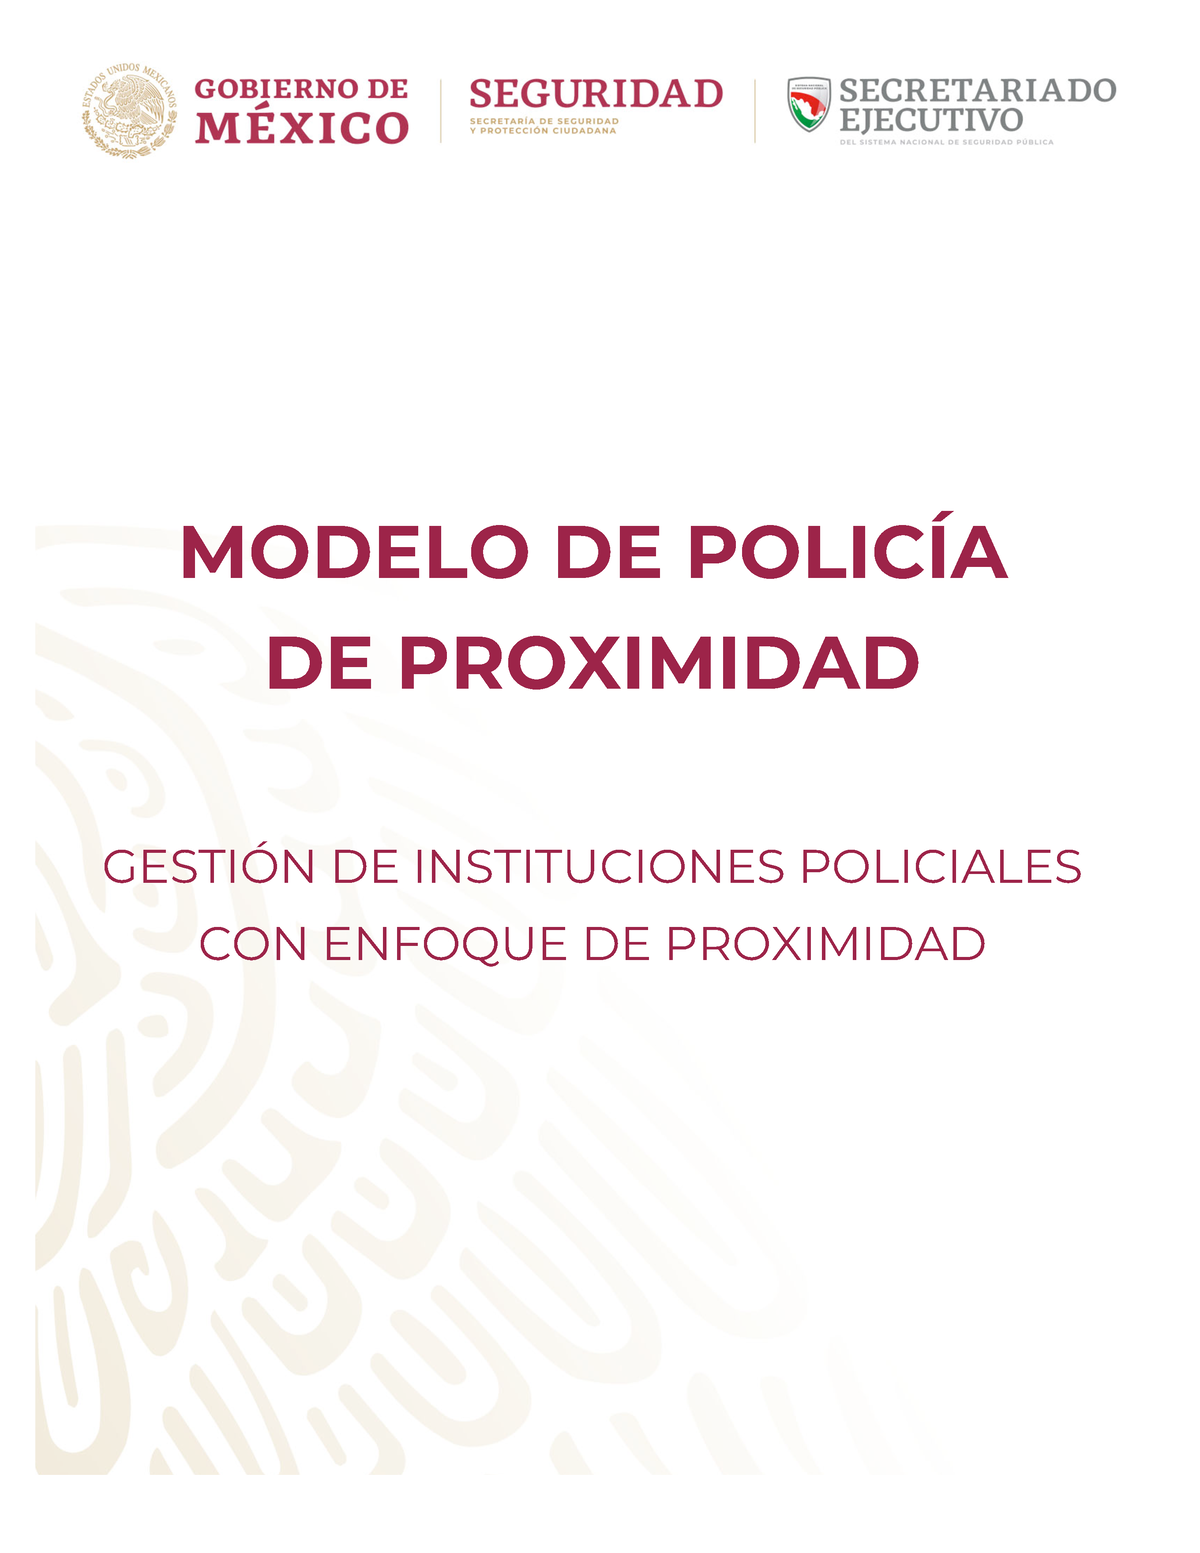 Modelo policial de proximidad - MODELO DE POLICÍA DE PROXIMIDAD GESTIÓN DE  INSTITUCIONES POLICIALES - Studocu